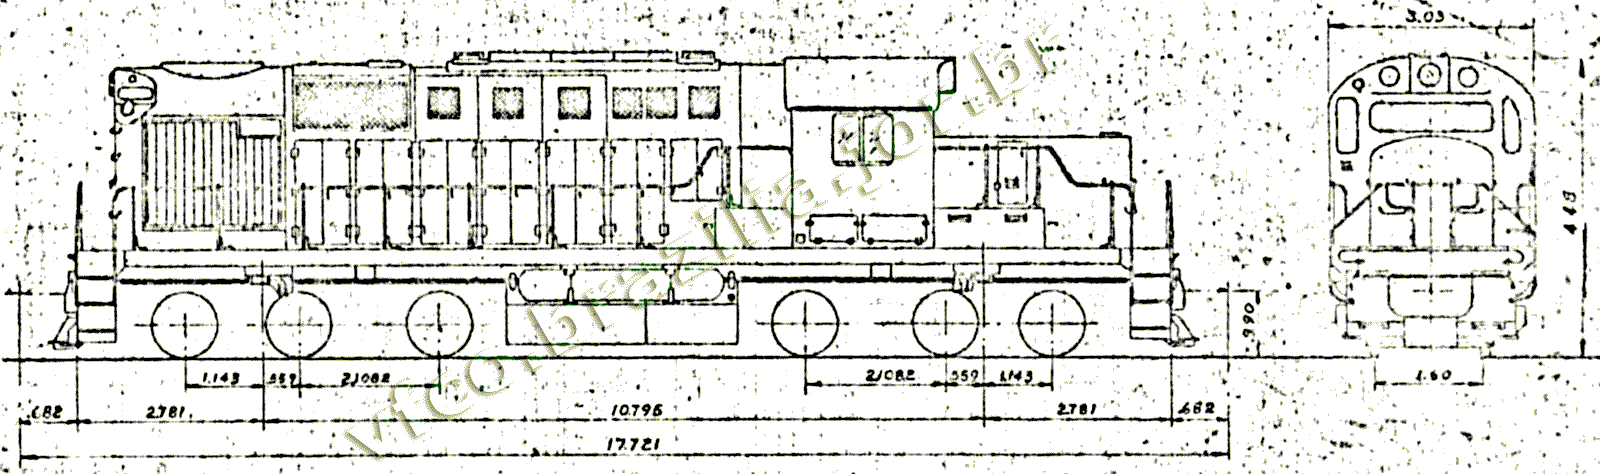 Desenho e medidas da Locomotiva Alco RSD-12